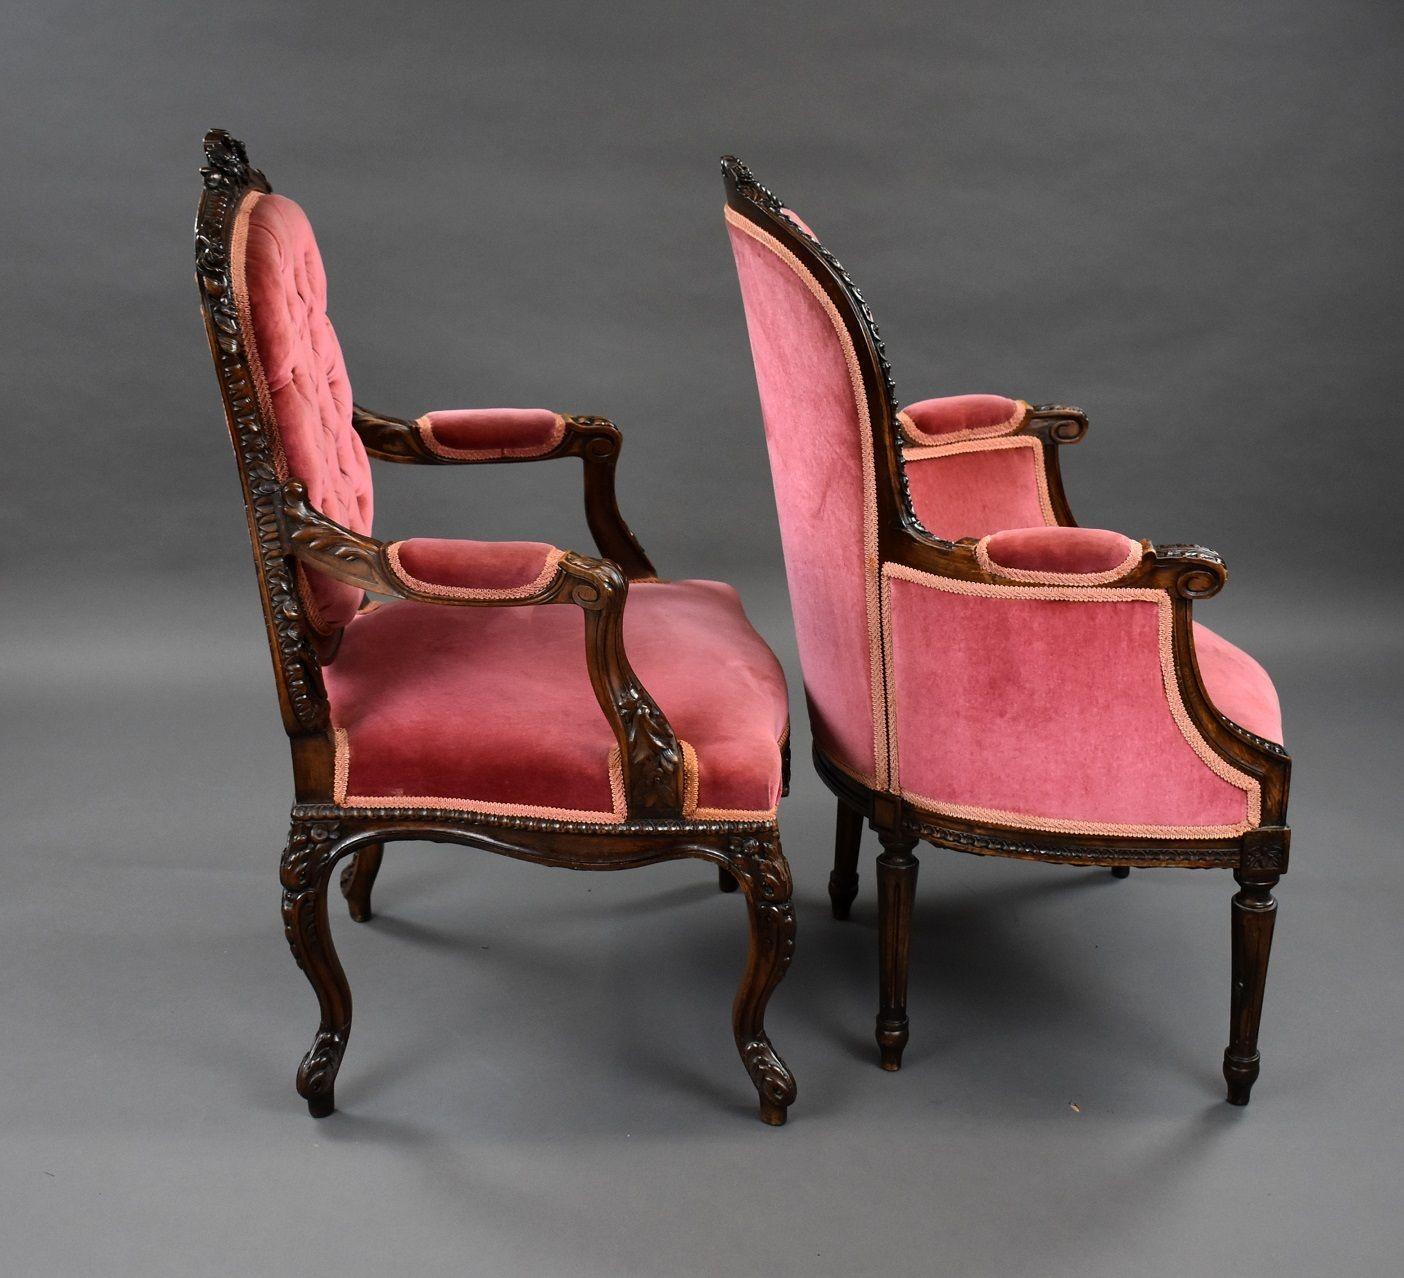 Französisch Stil Mahagoni Boudoir Sessel in gutem Zustand. Beide sind mit schönen Schnitzereien versehen und mit dem gleichen rosa Stoff gepolstert, die Rückenlehnen sind geknöpft. Ein Stuhl hat Cabriole-Beine mit offenen Armen, der andere